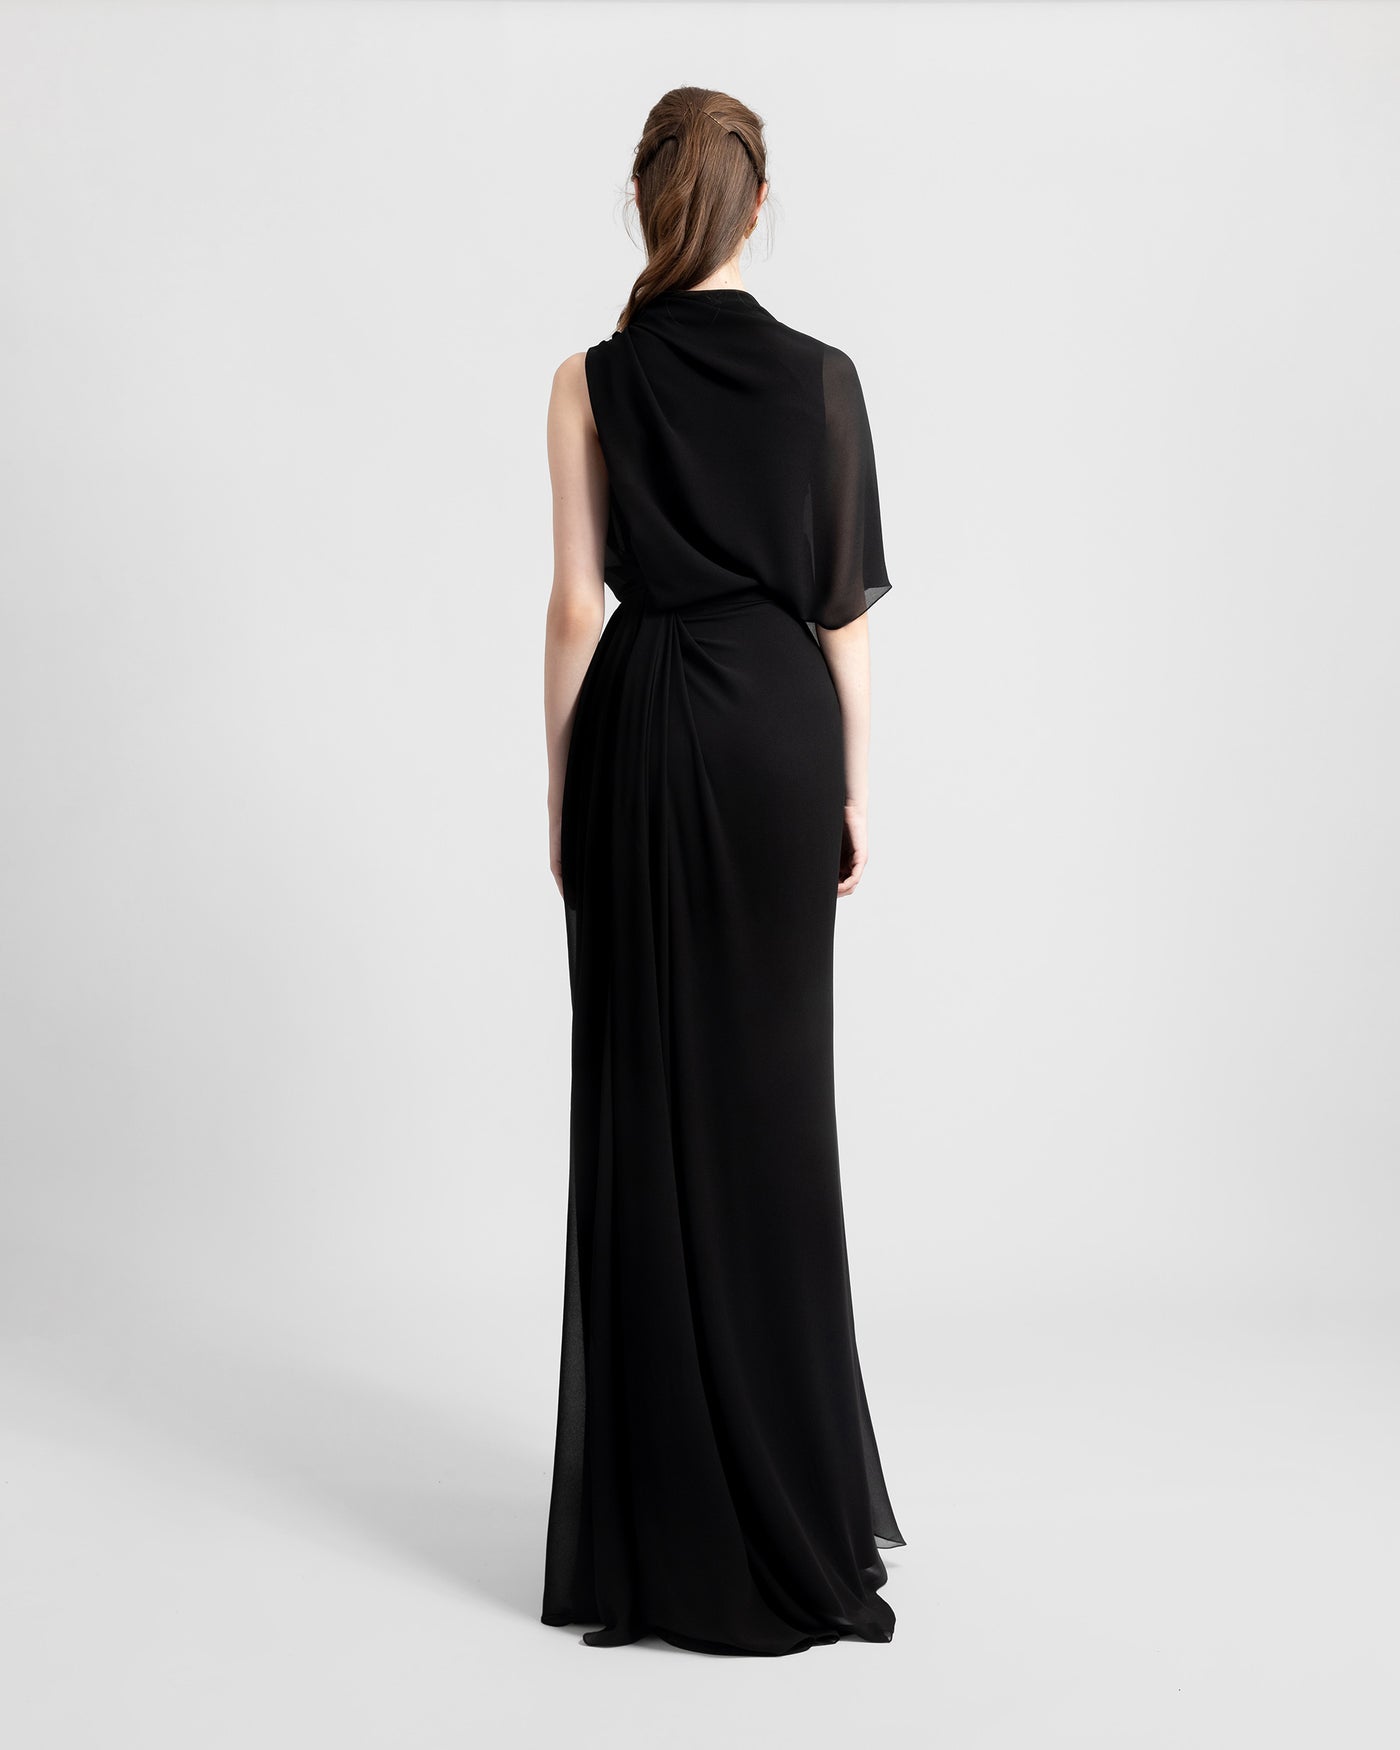 Asymmetrical Draped Black Dress